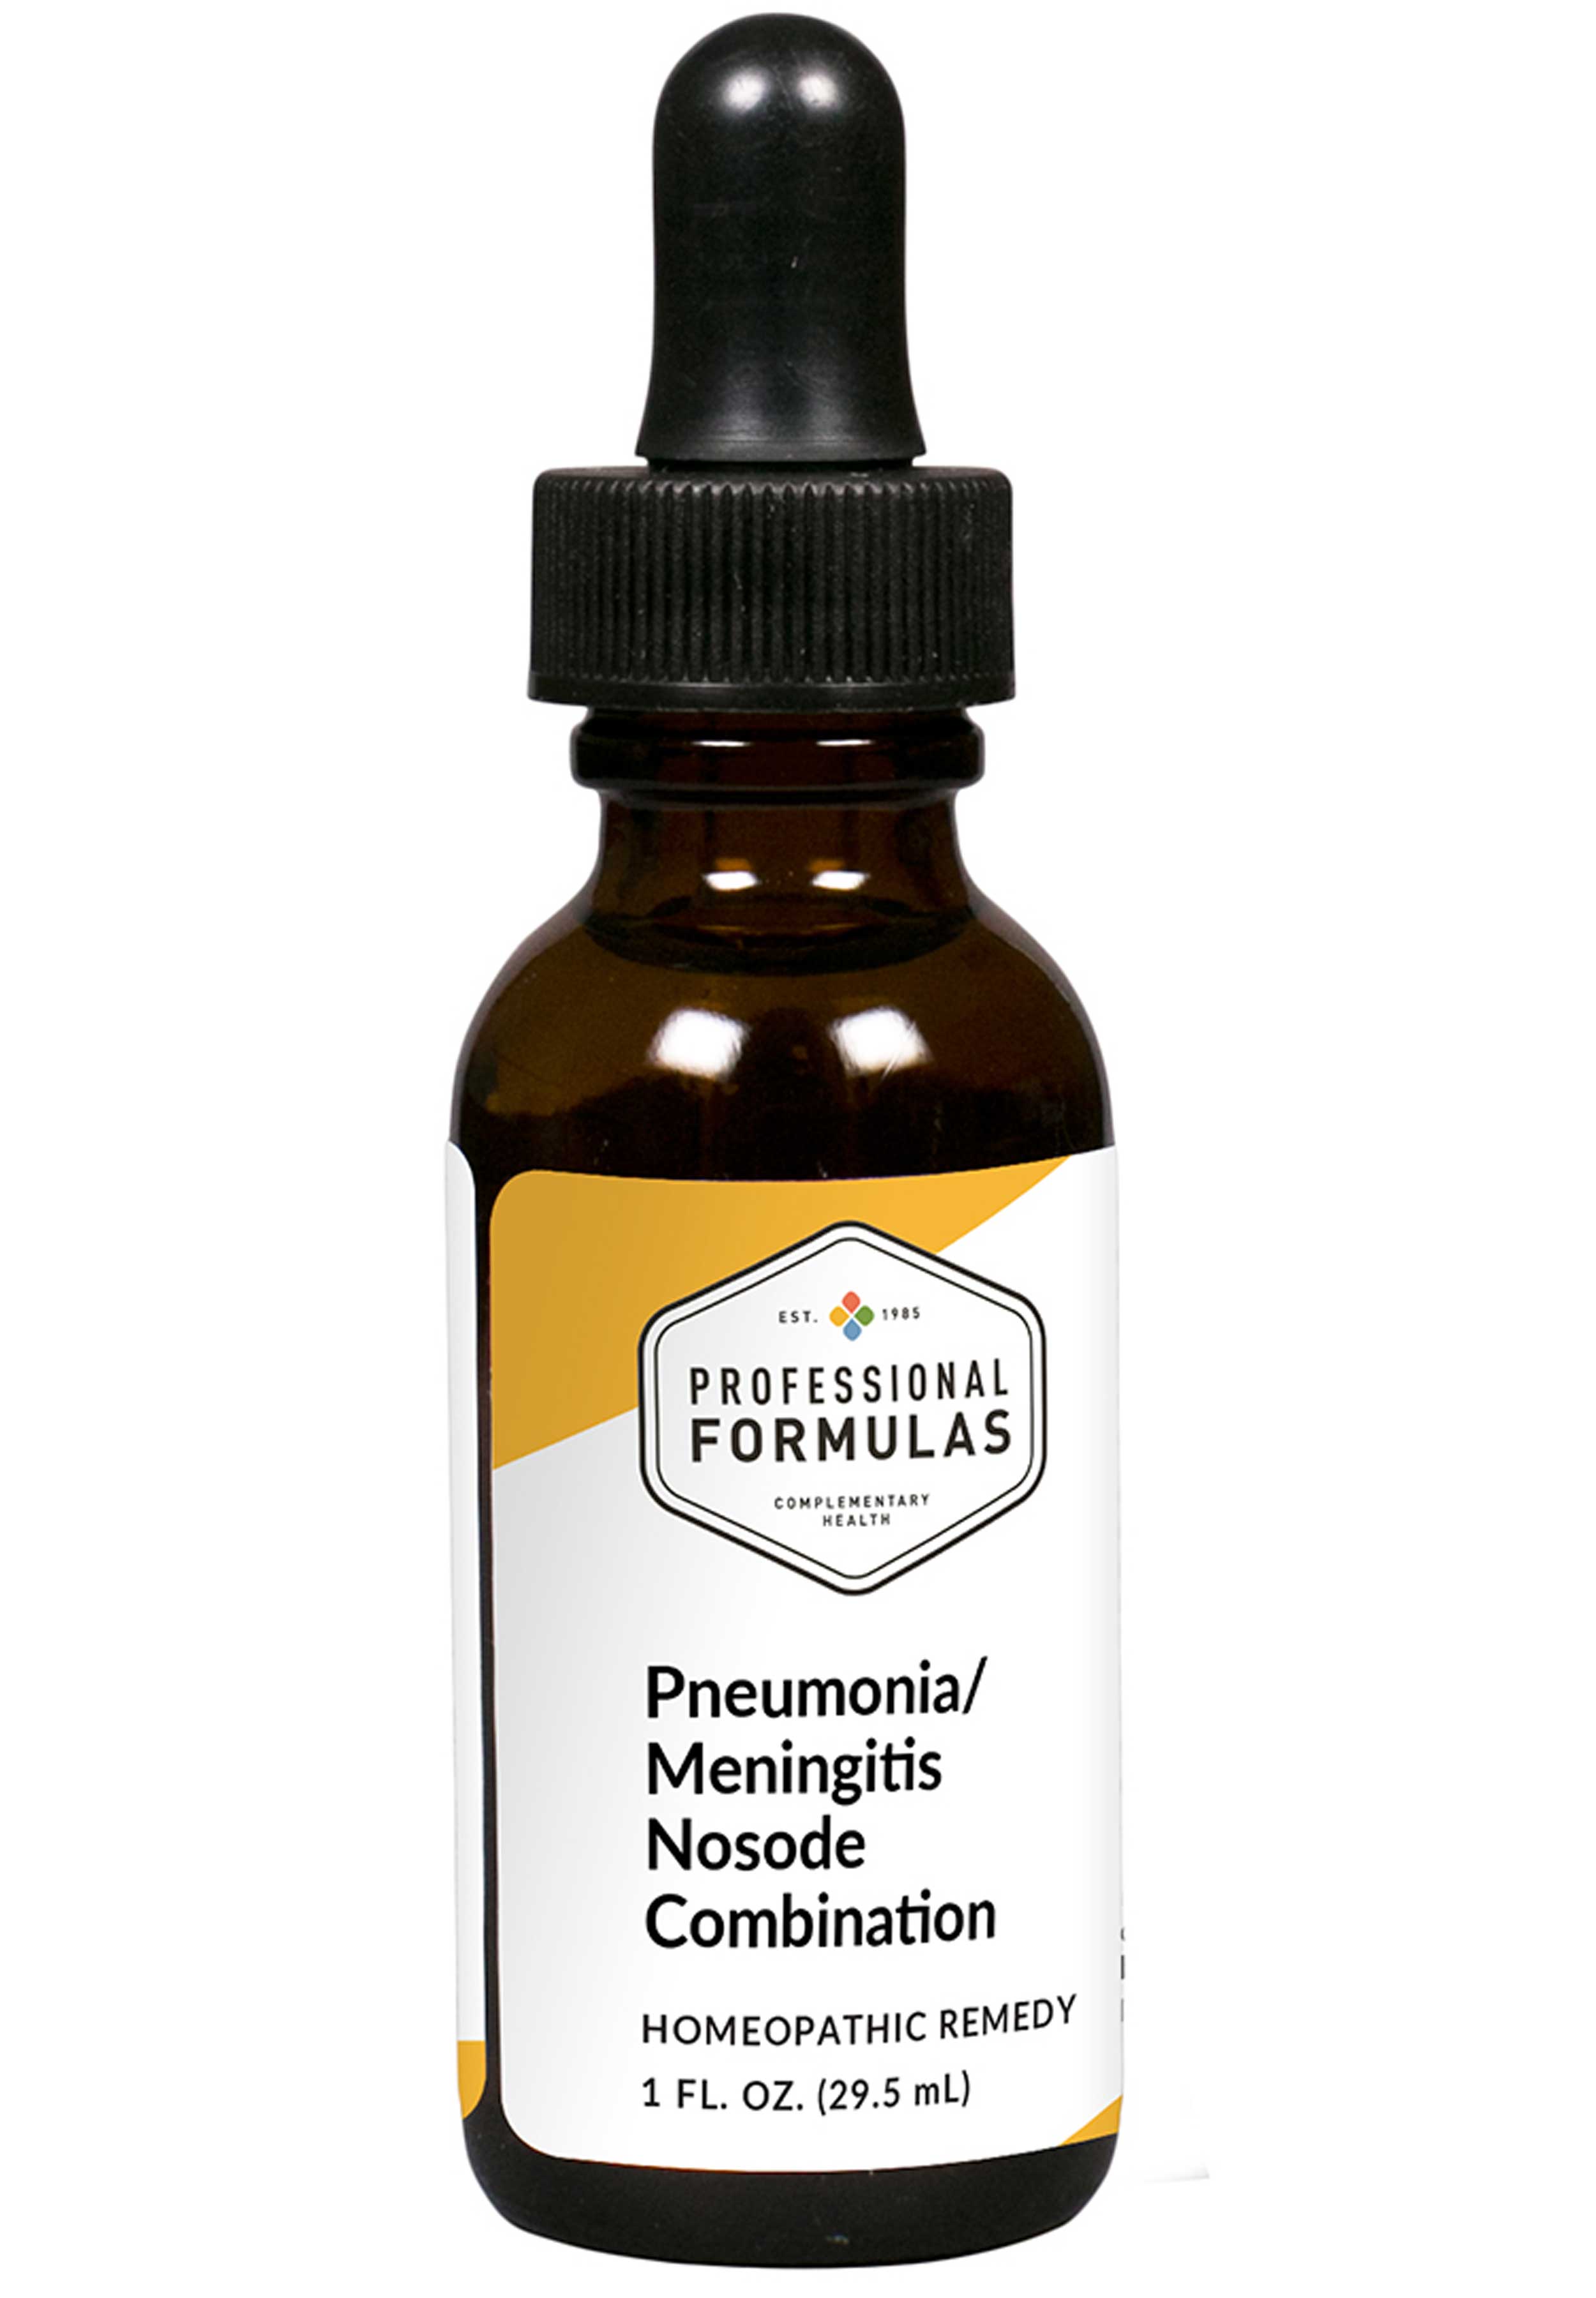 Professional Formulas Pneumonia / Meningitis Nosode Combination